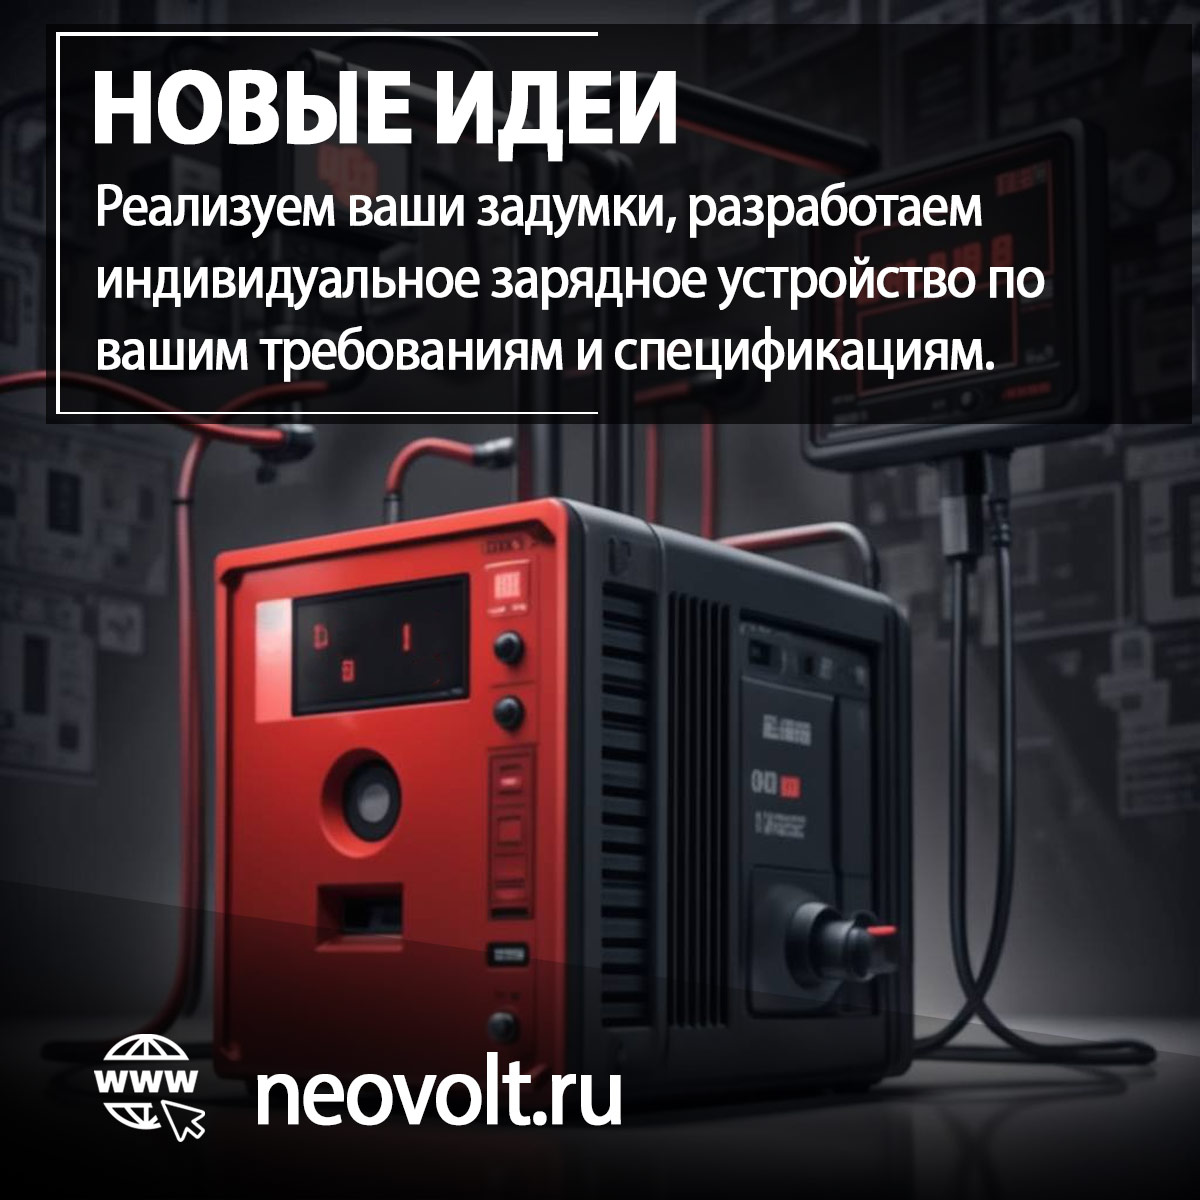 Разработаем и изговим зарядные устройства Neovolt для нового или редкого оборудования